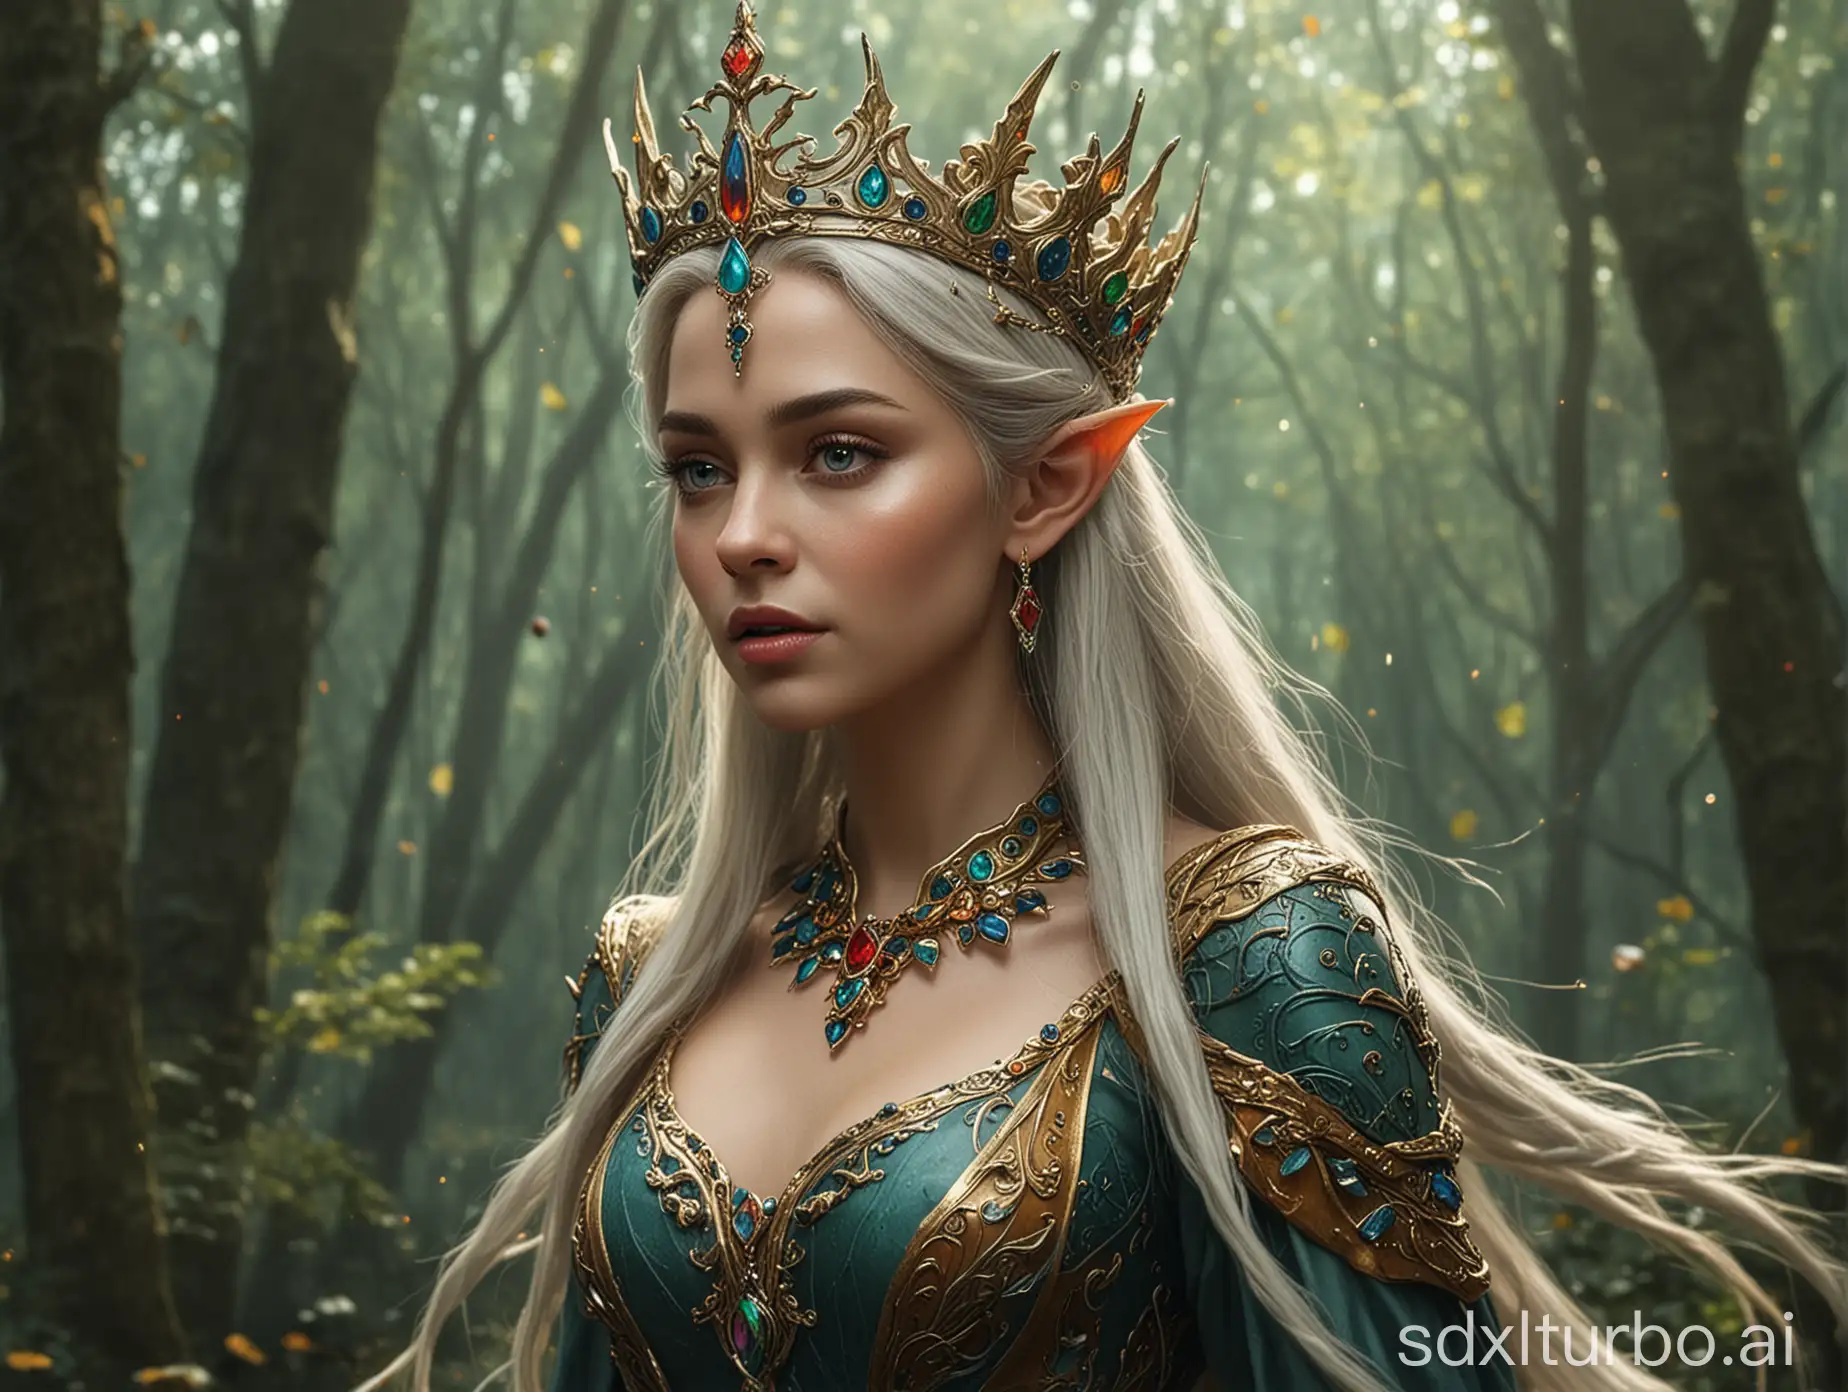 a queen of elves